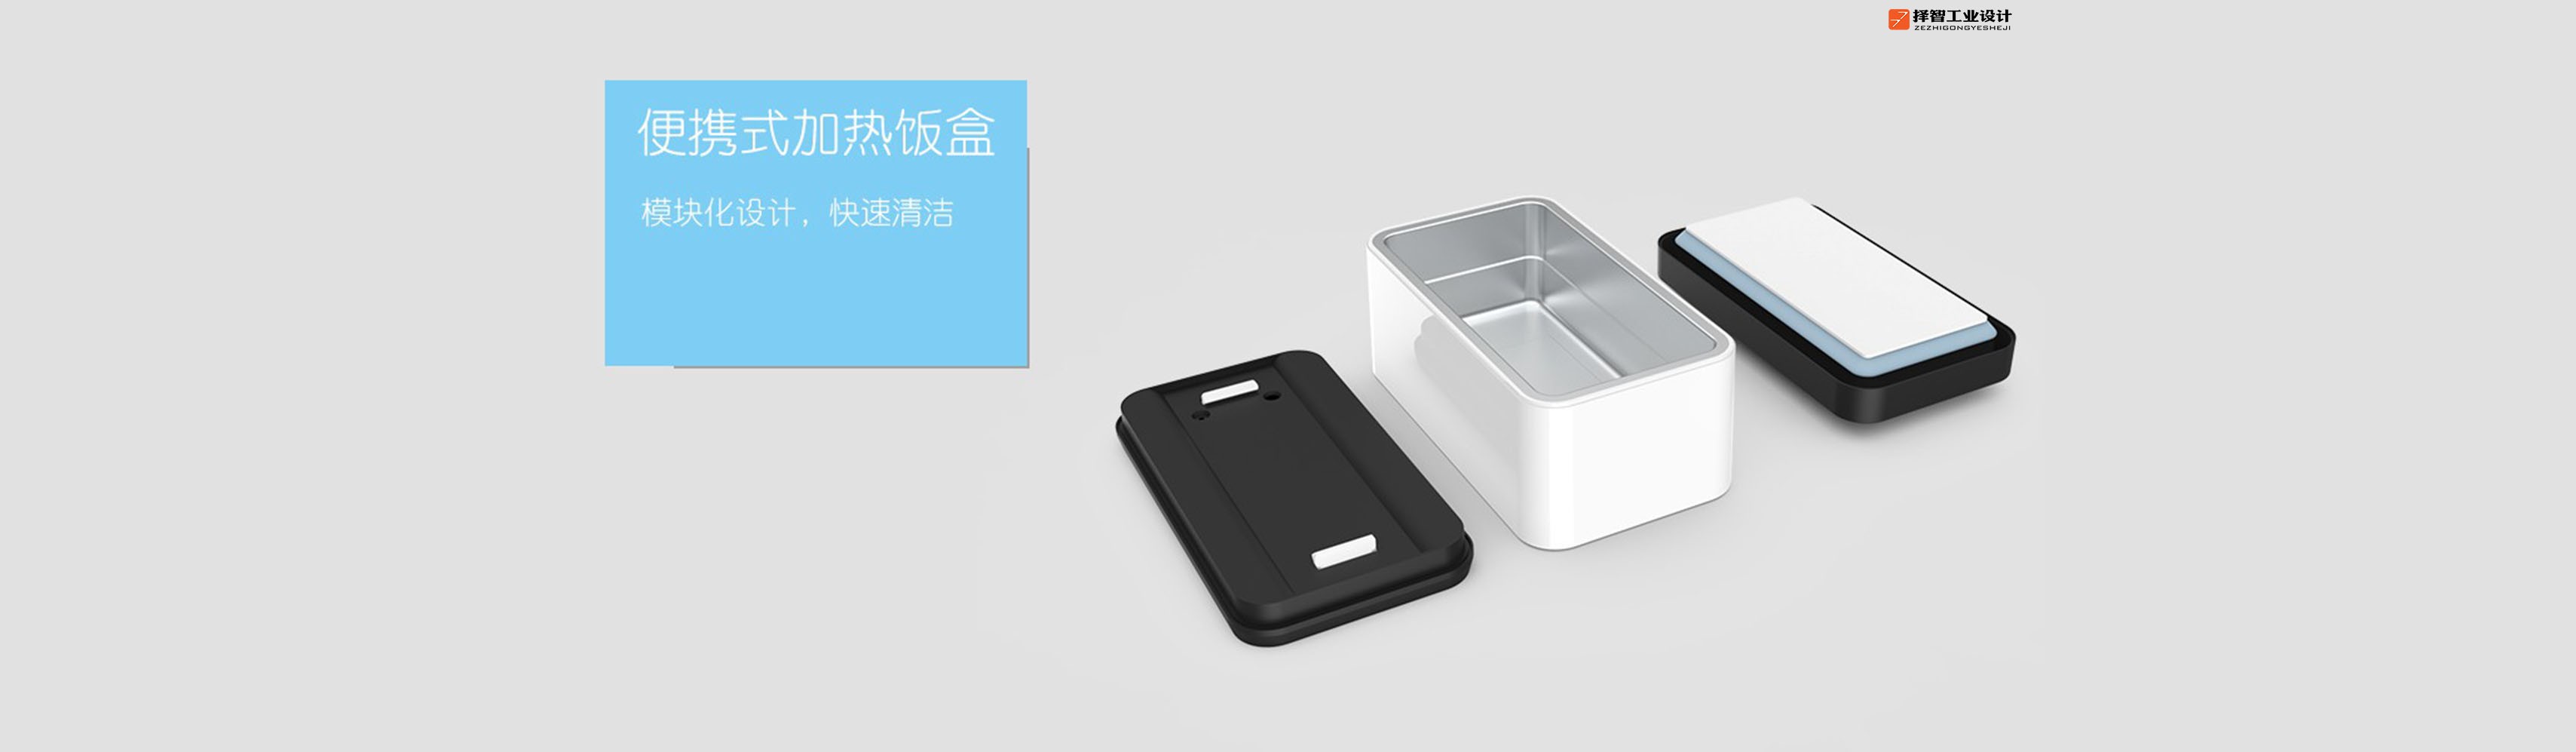 上海苏州产品设计 工业产品外观设计 结构设计 便携式加热饭盒外观设计